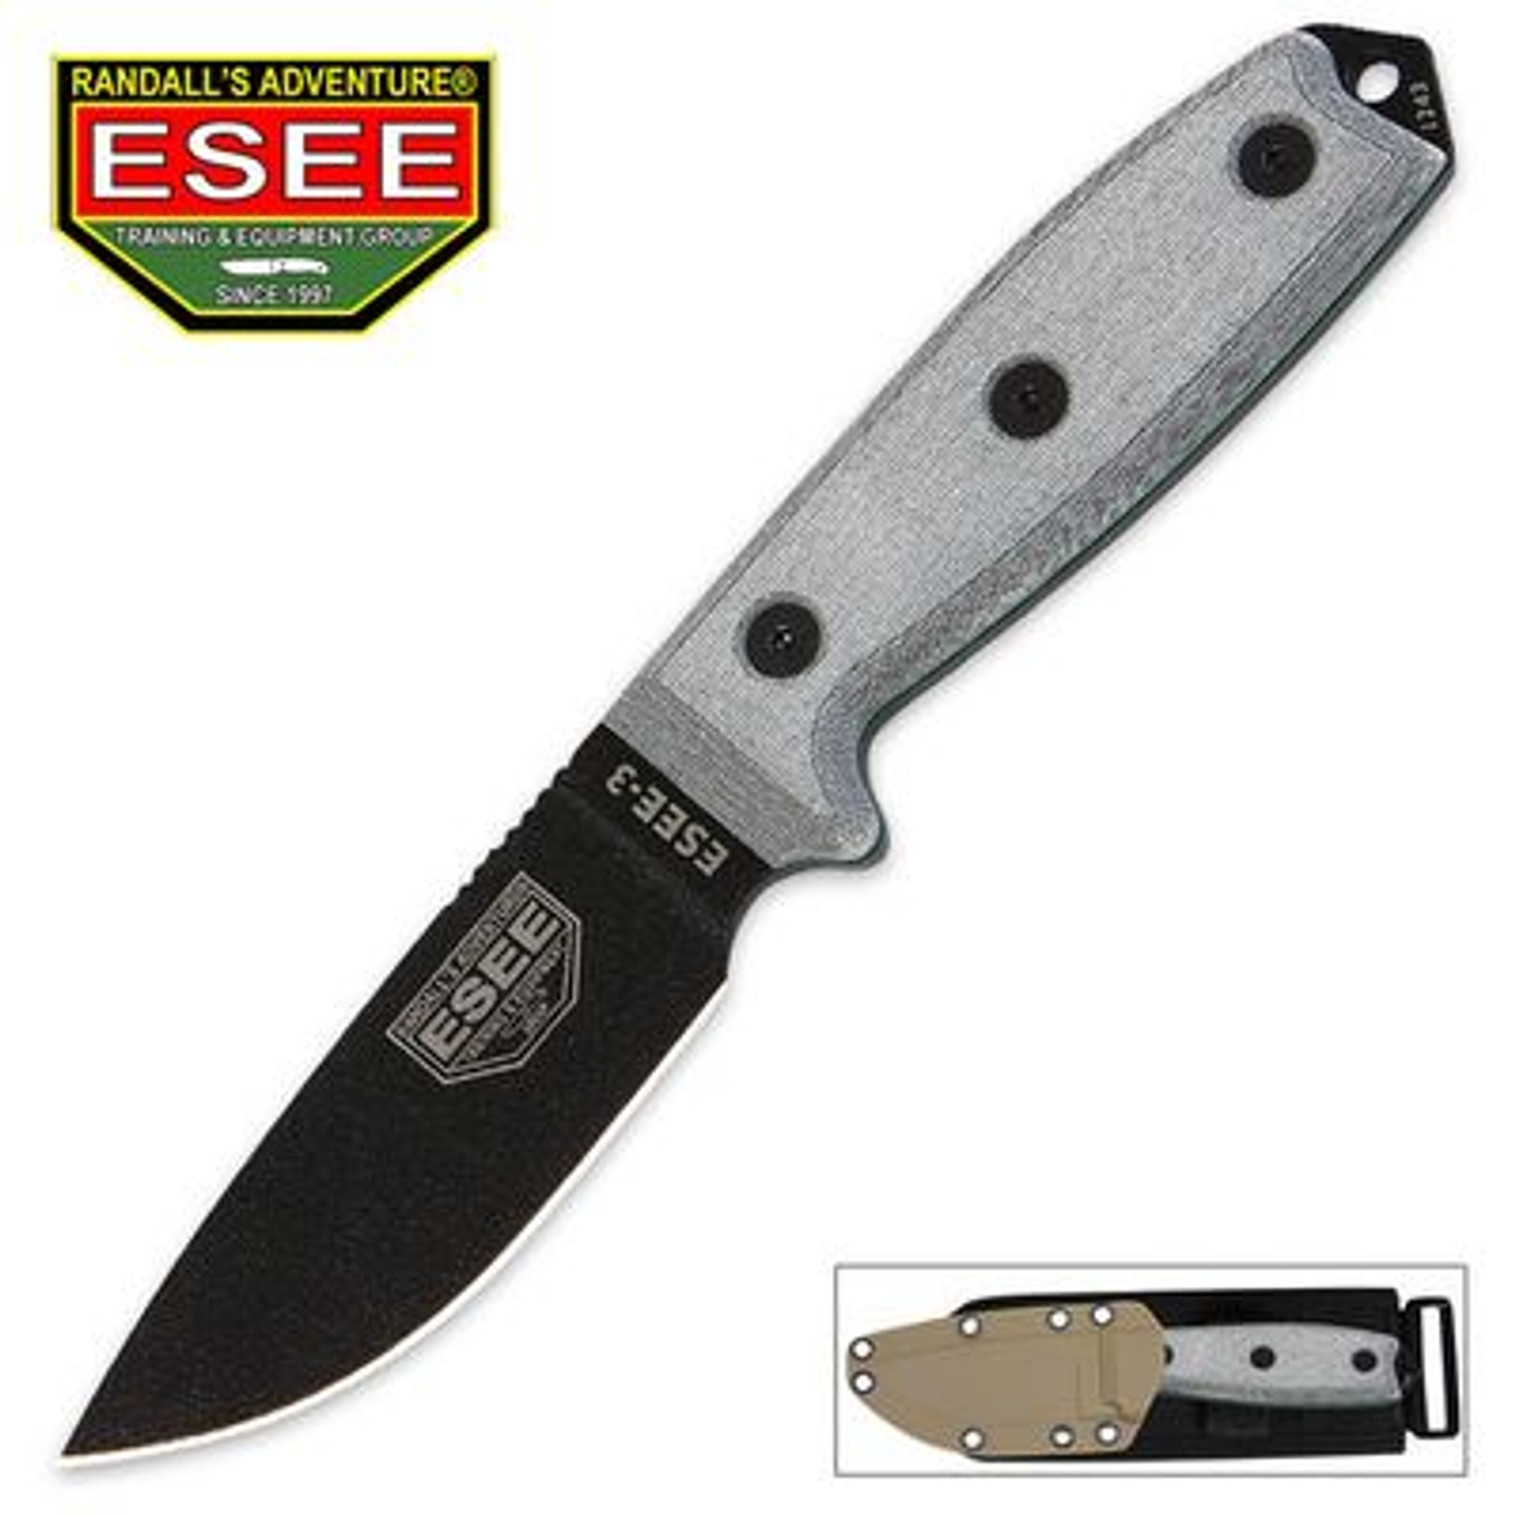 ESEE-3 Special Team Knife w/Sheath - Plain Edge